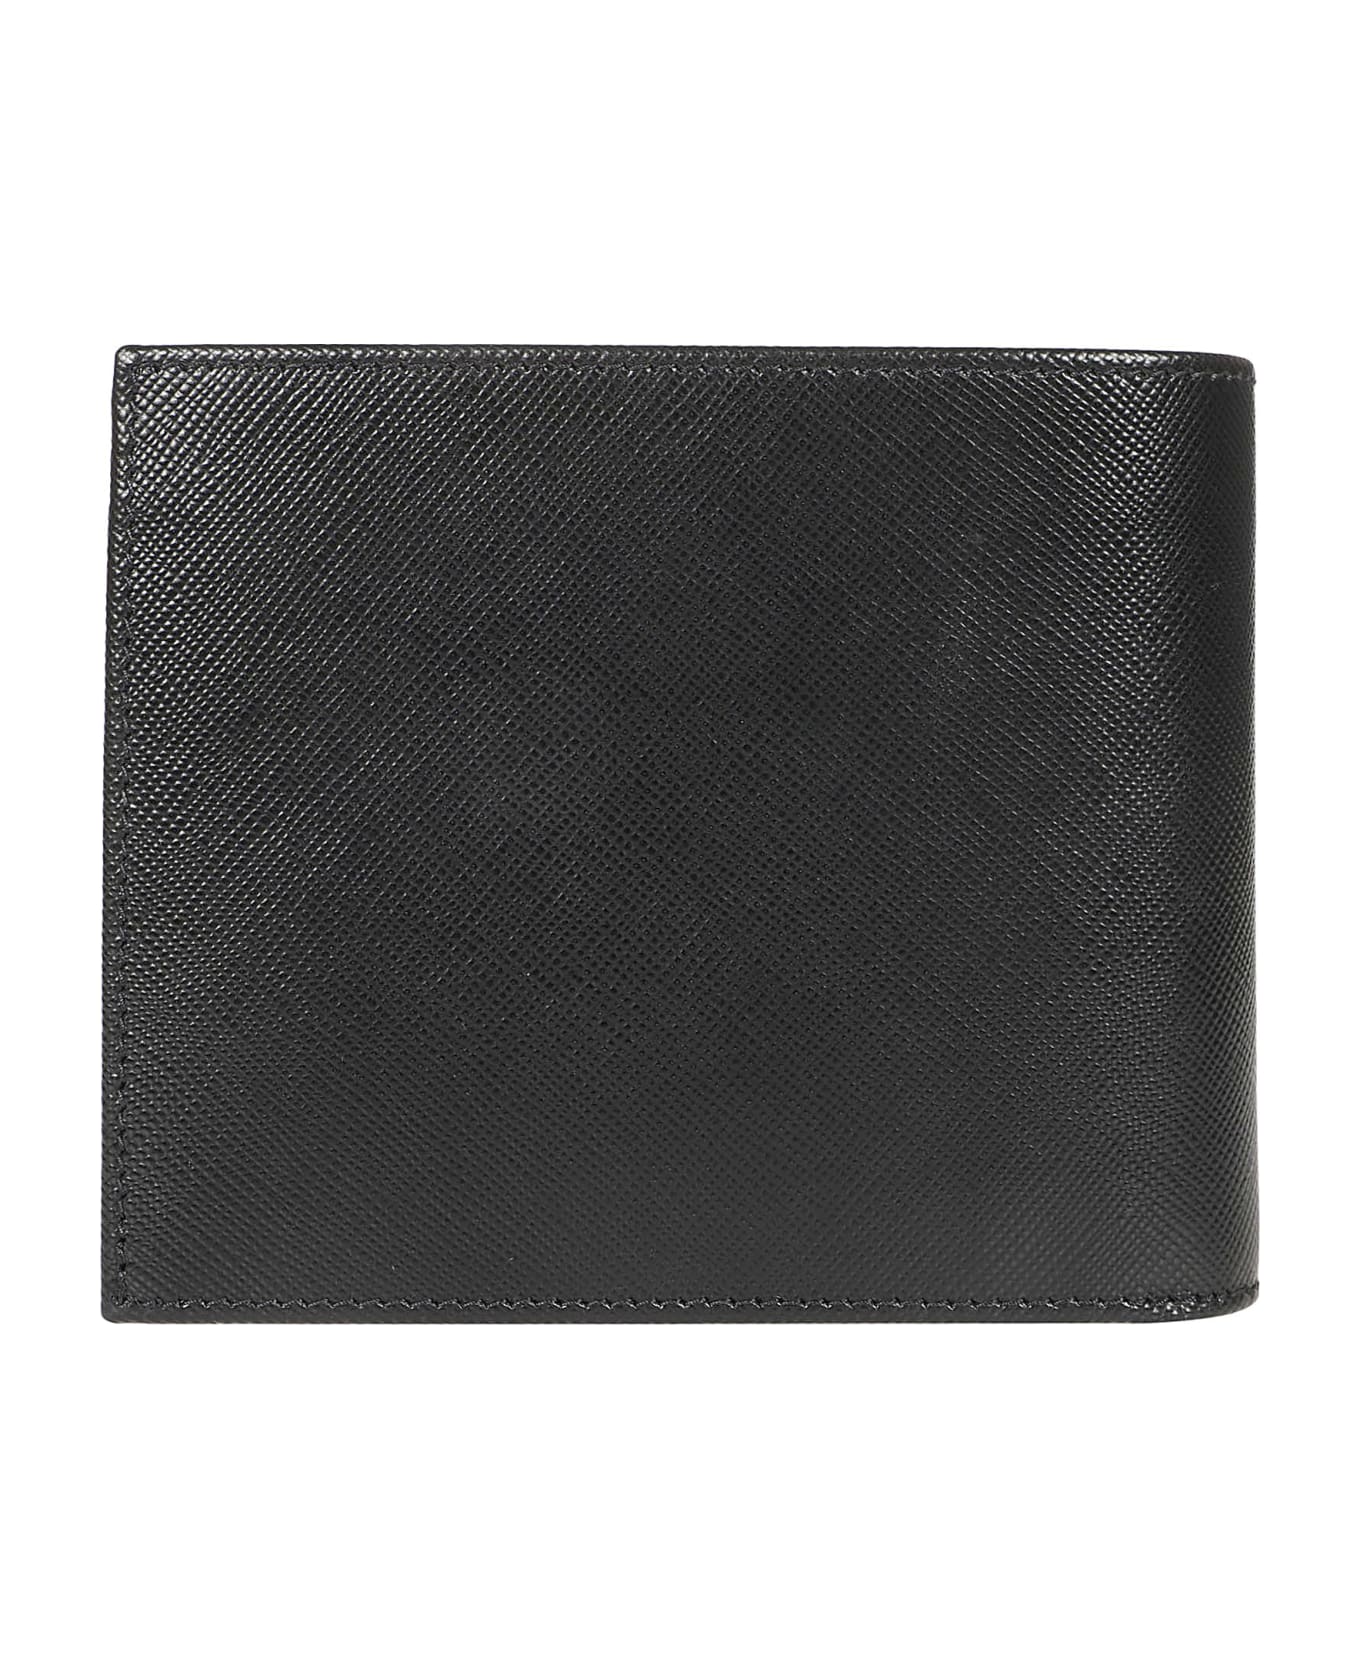 Kiton A015 Wallet - Nero 財布